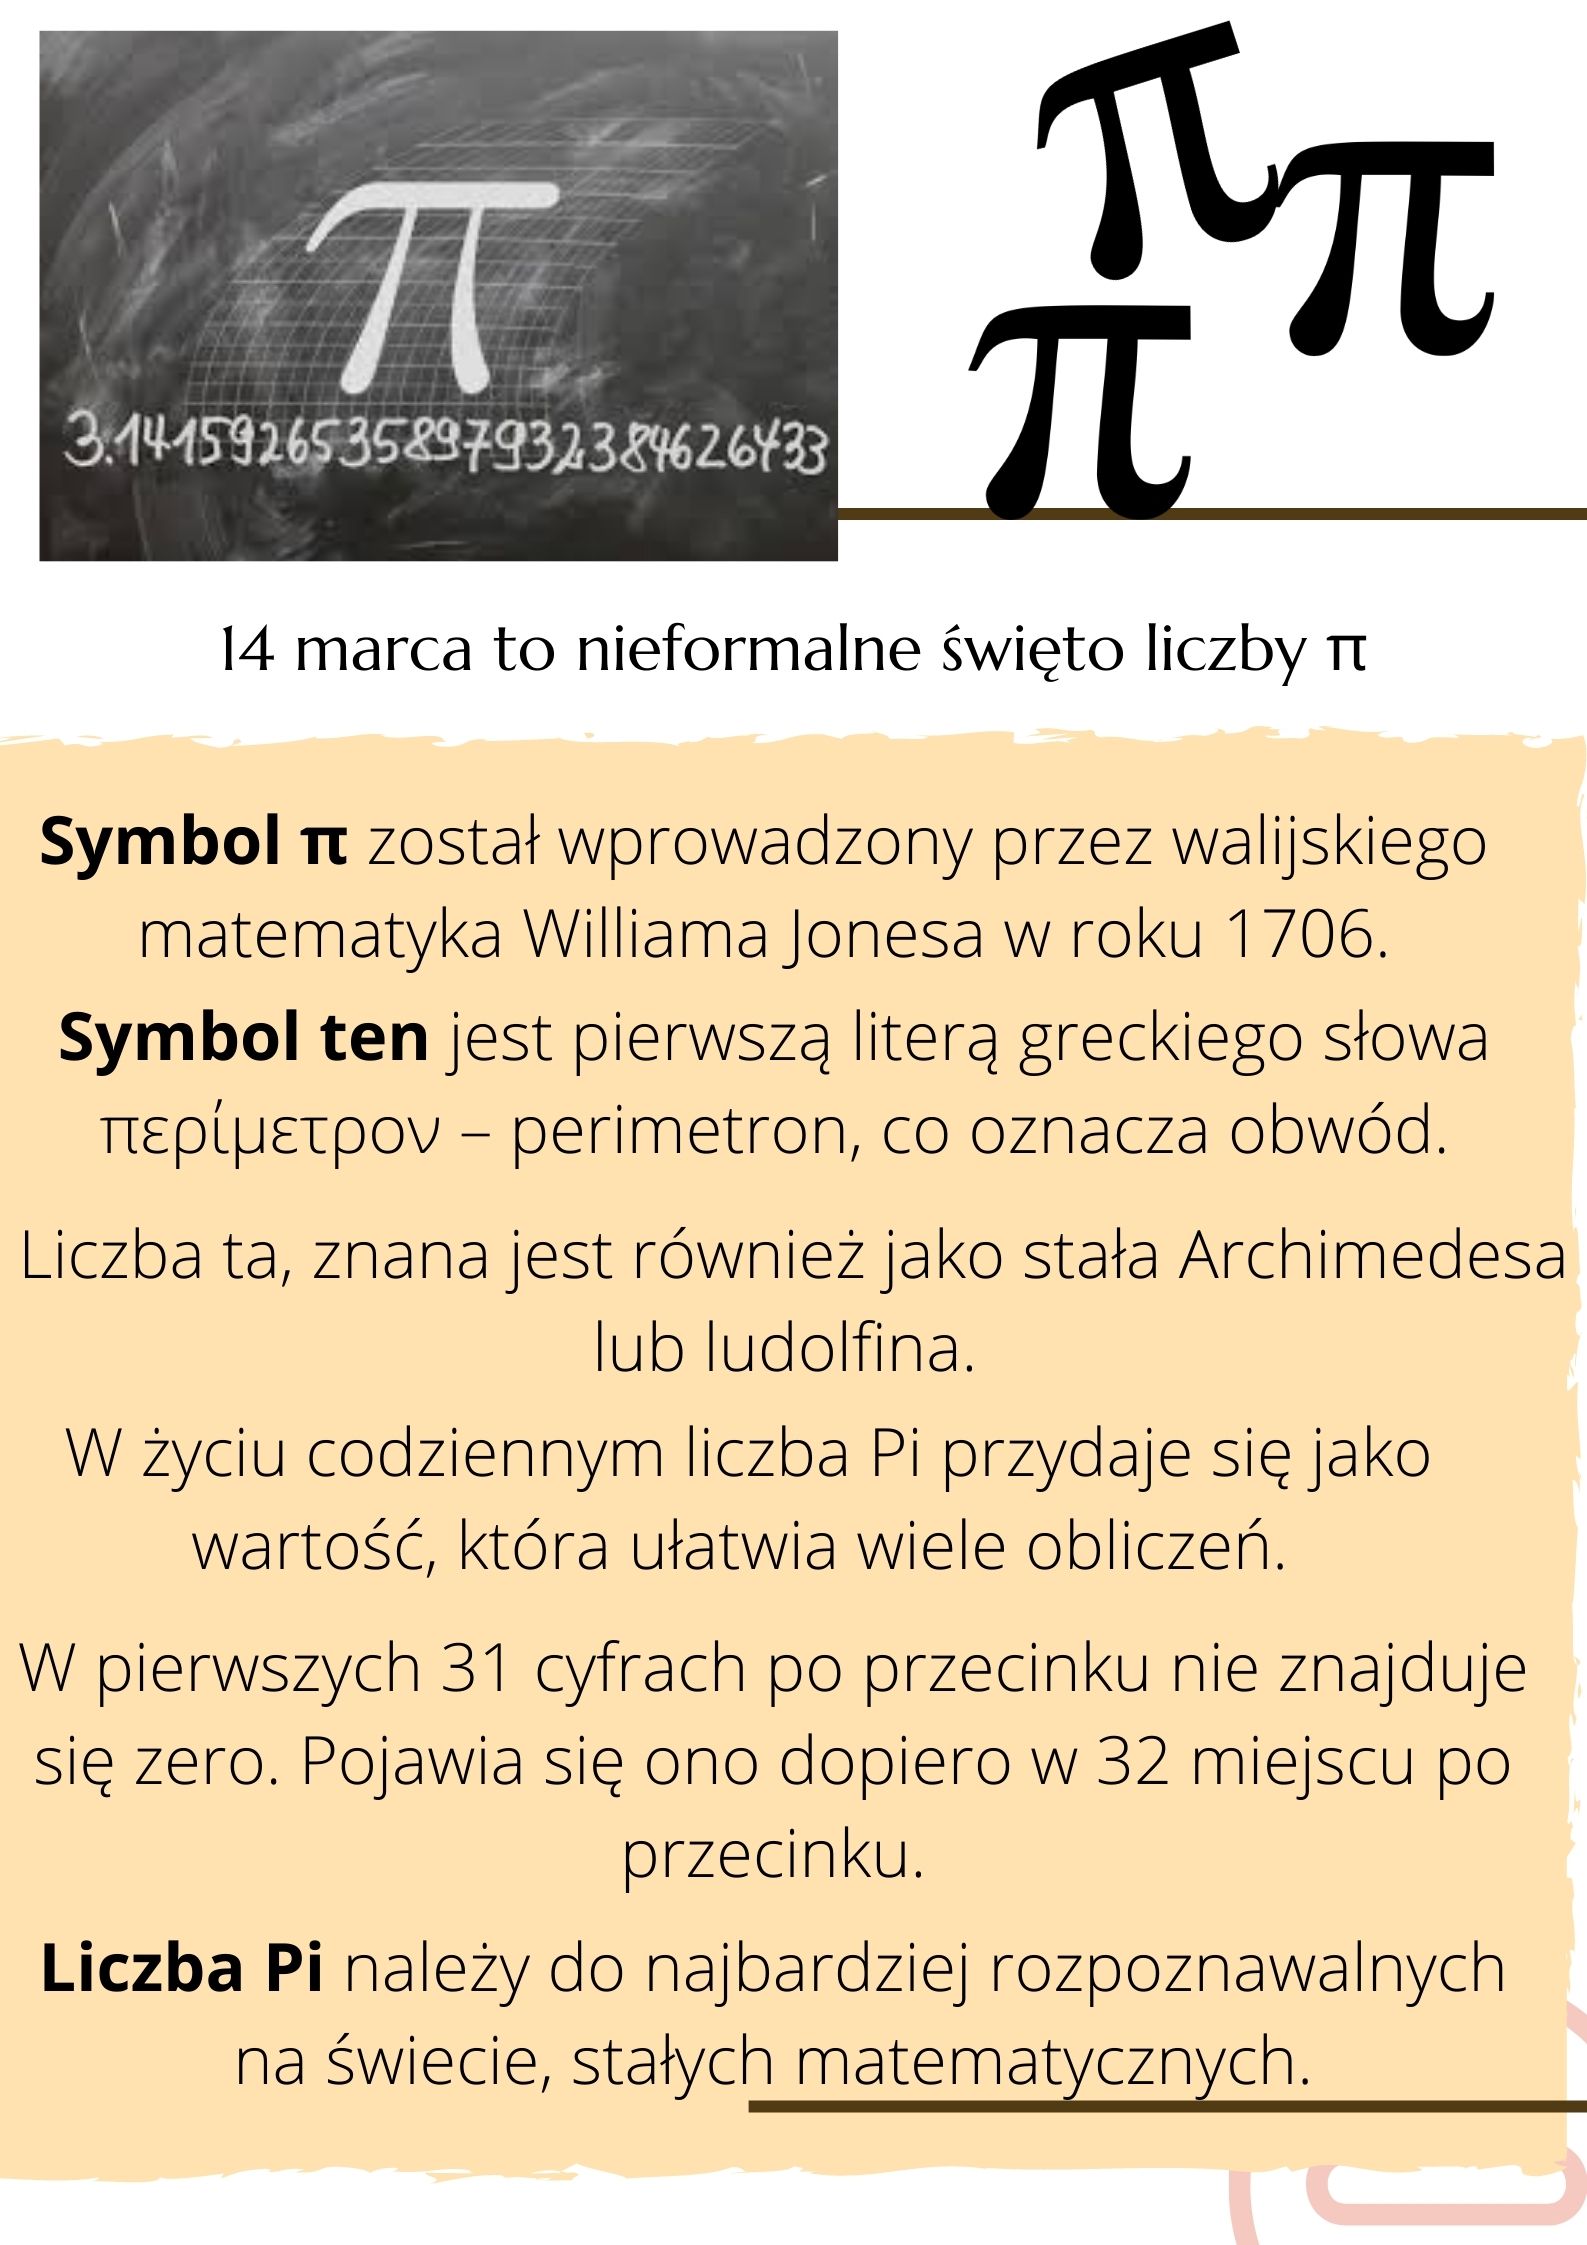 14 marca: Międzynarodowy Dzień Matematyki